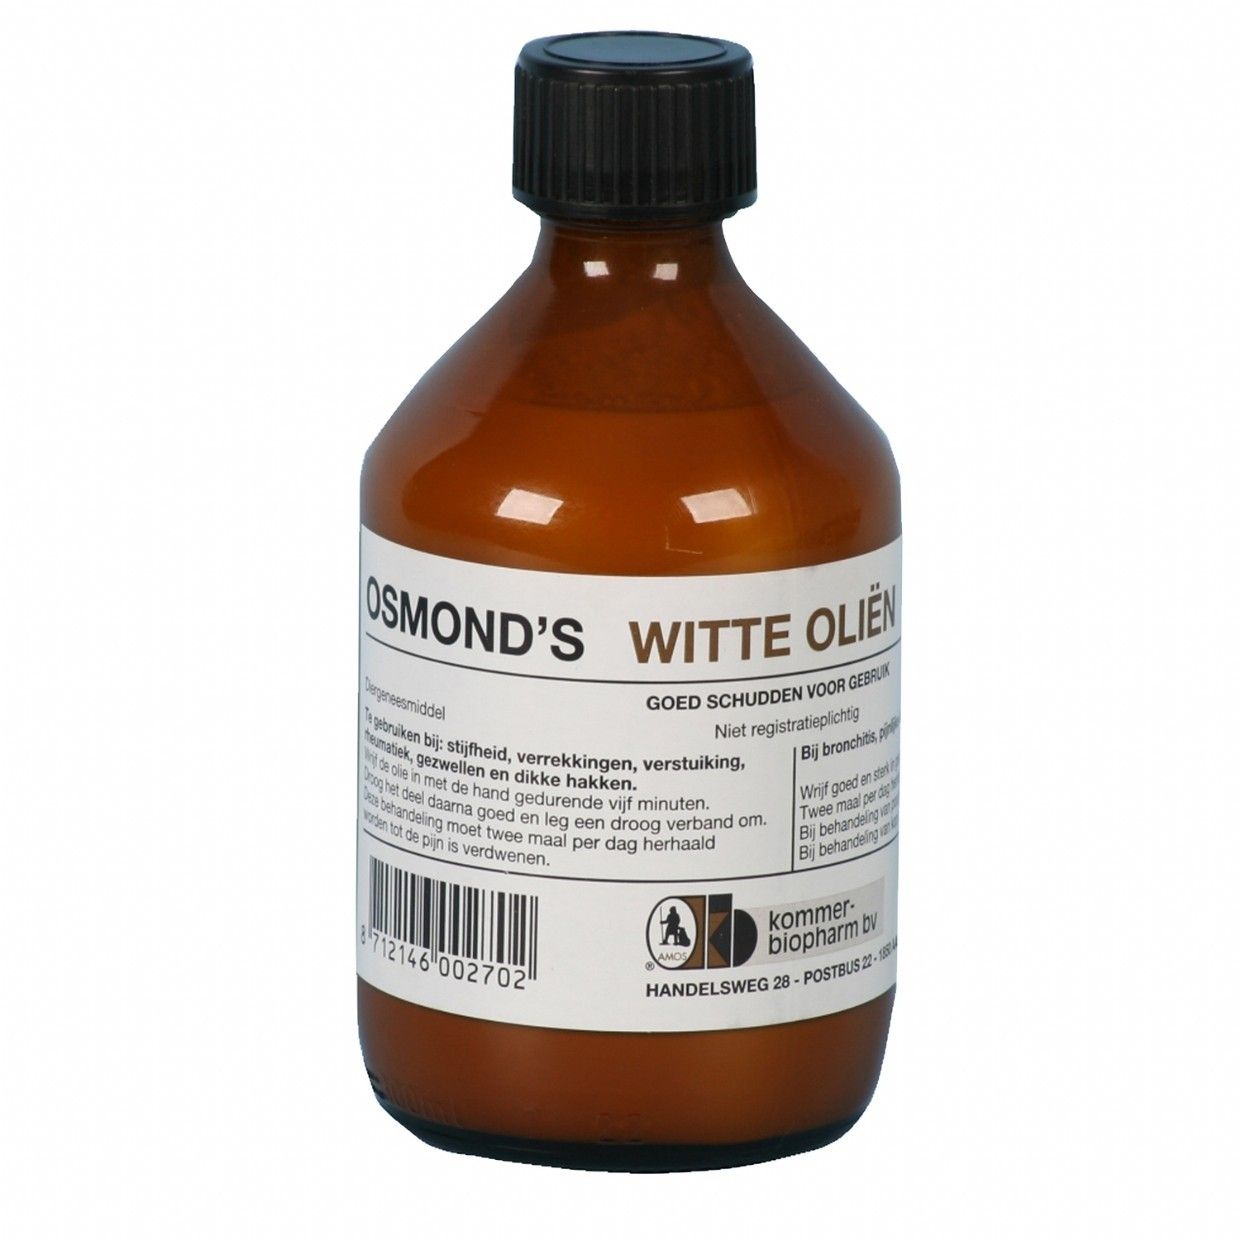 Osmond's witte olie 300ml